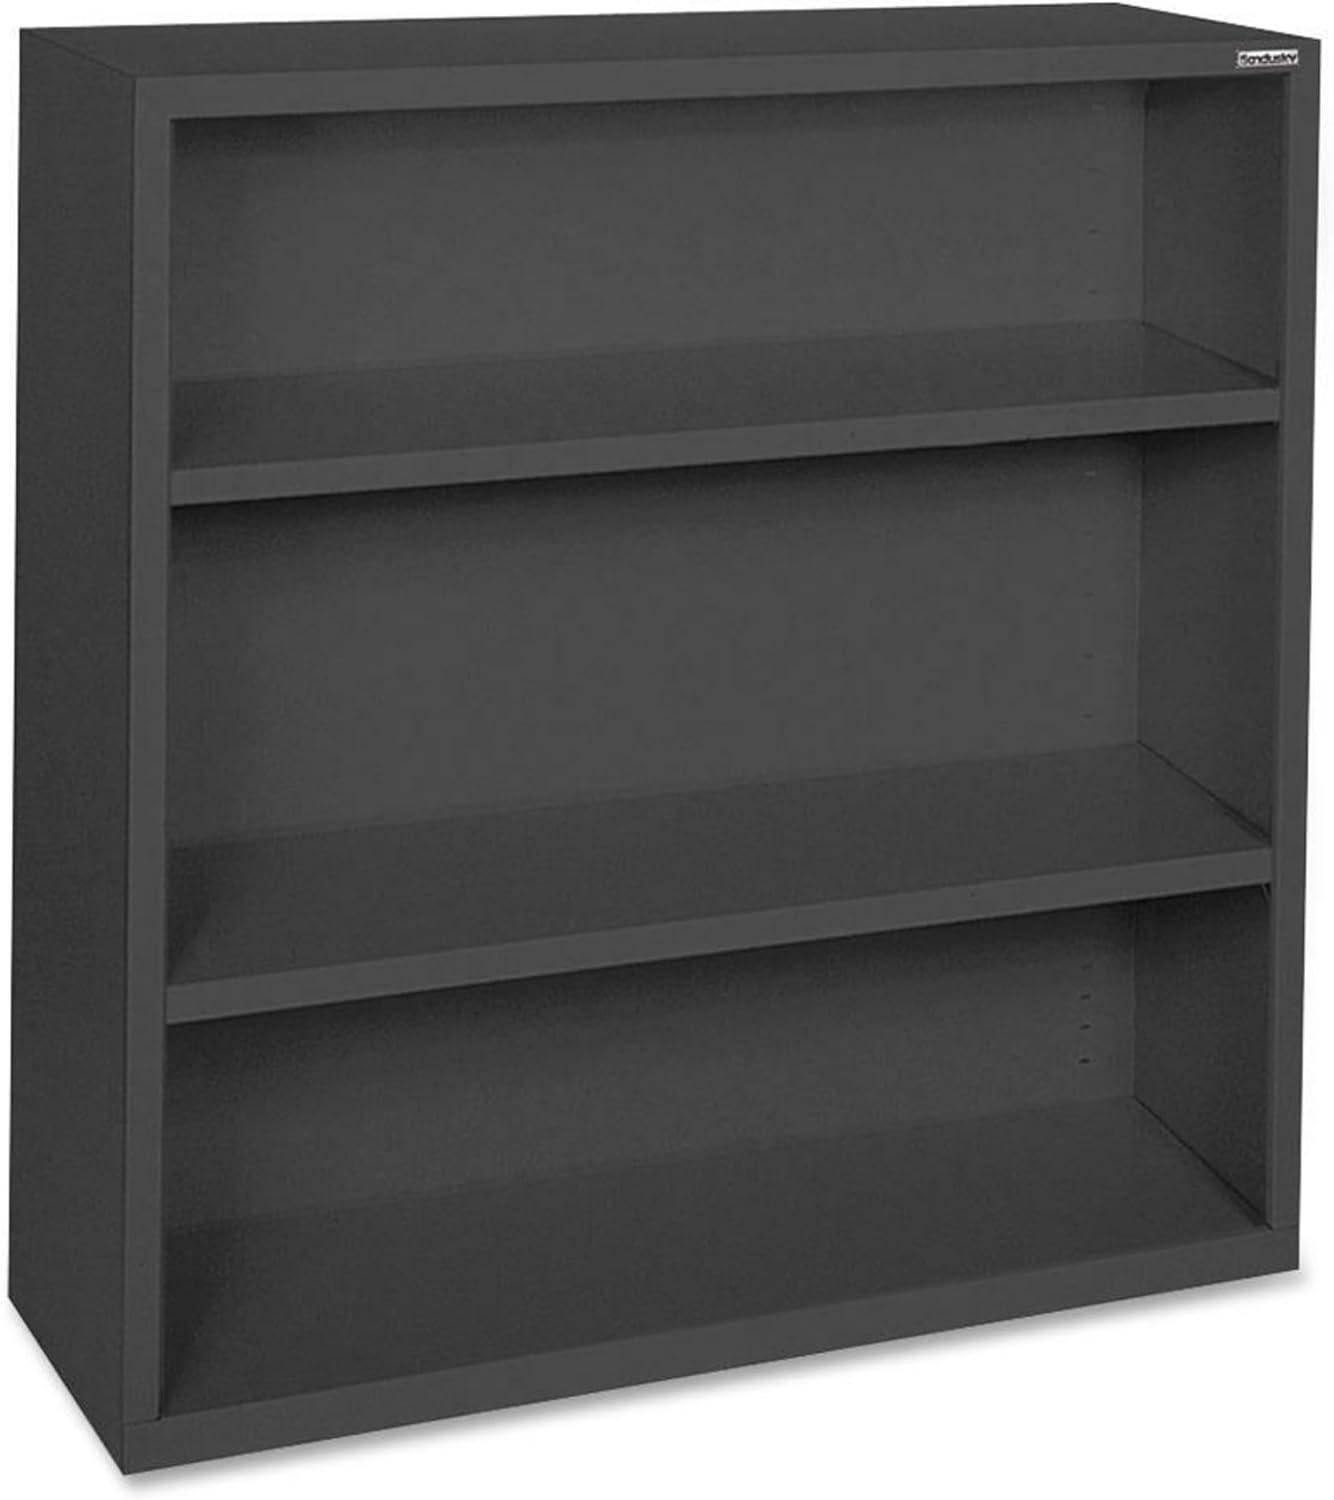 Adjustable Black Steel 3-Shelf 42" Bookcase with Powder-Coat Finish